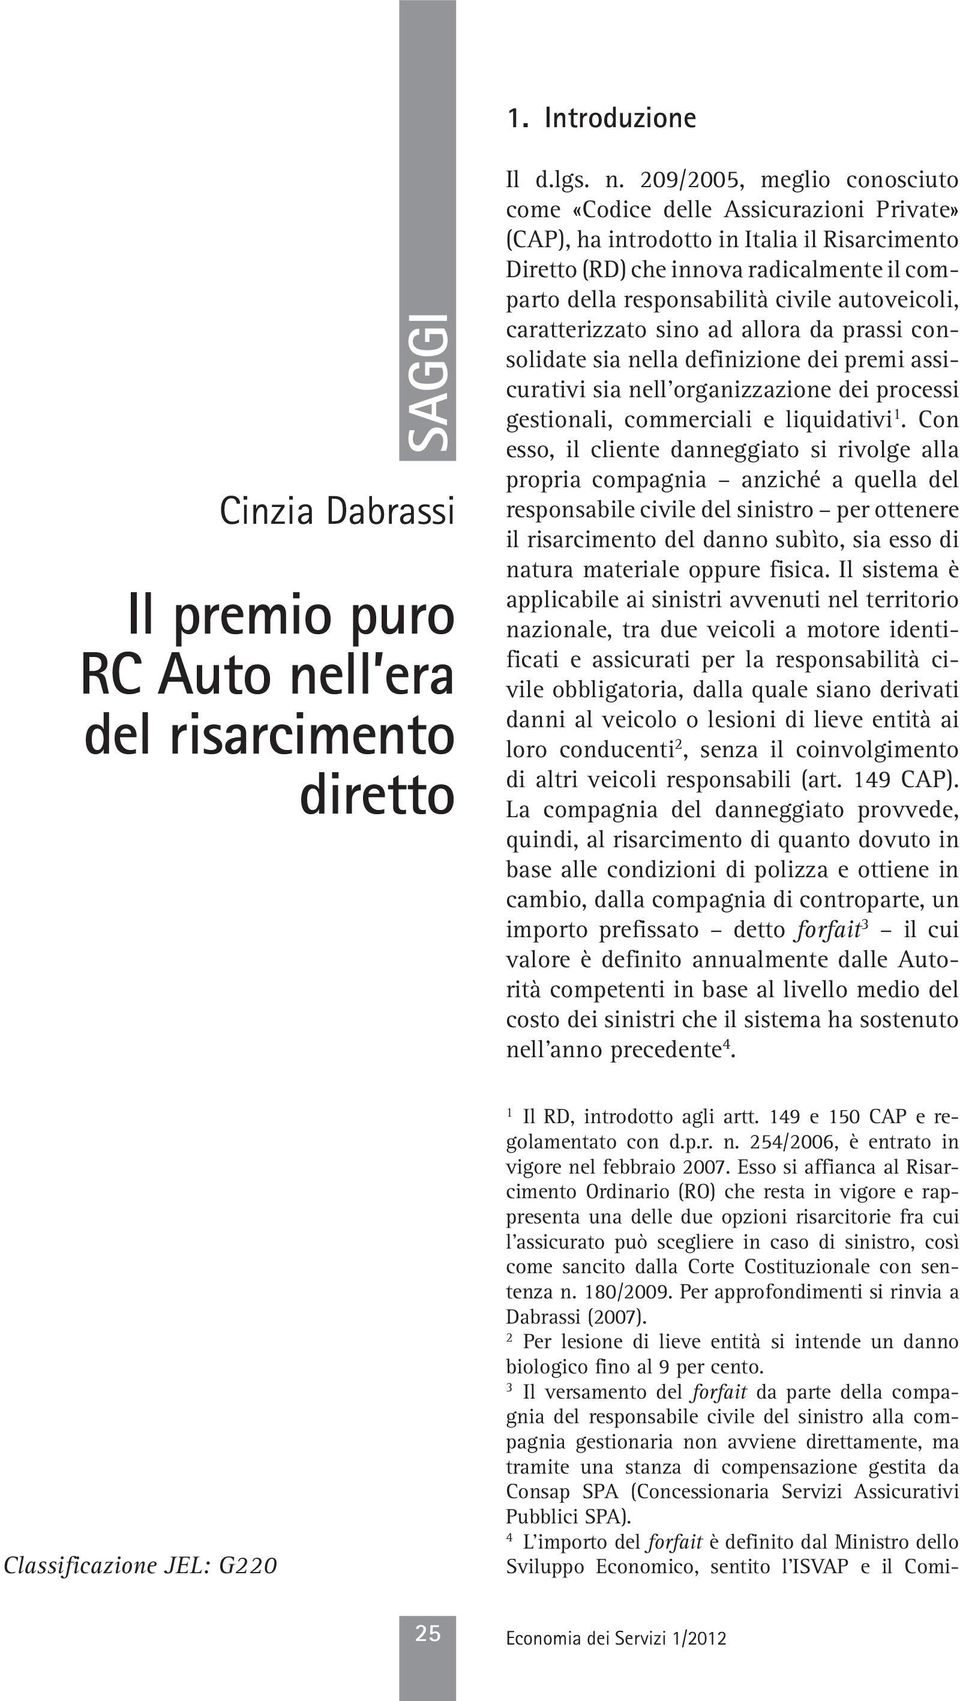 209/2005, meglio conosciuto come «Codice delle Assicurazioni Private» (CAP), ha introdotto in Italia il Risarcimento Diretto (RD) che innova radicalmente il comparto della responsabilità civile